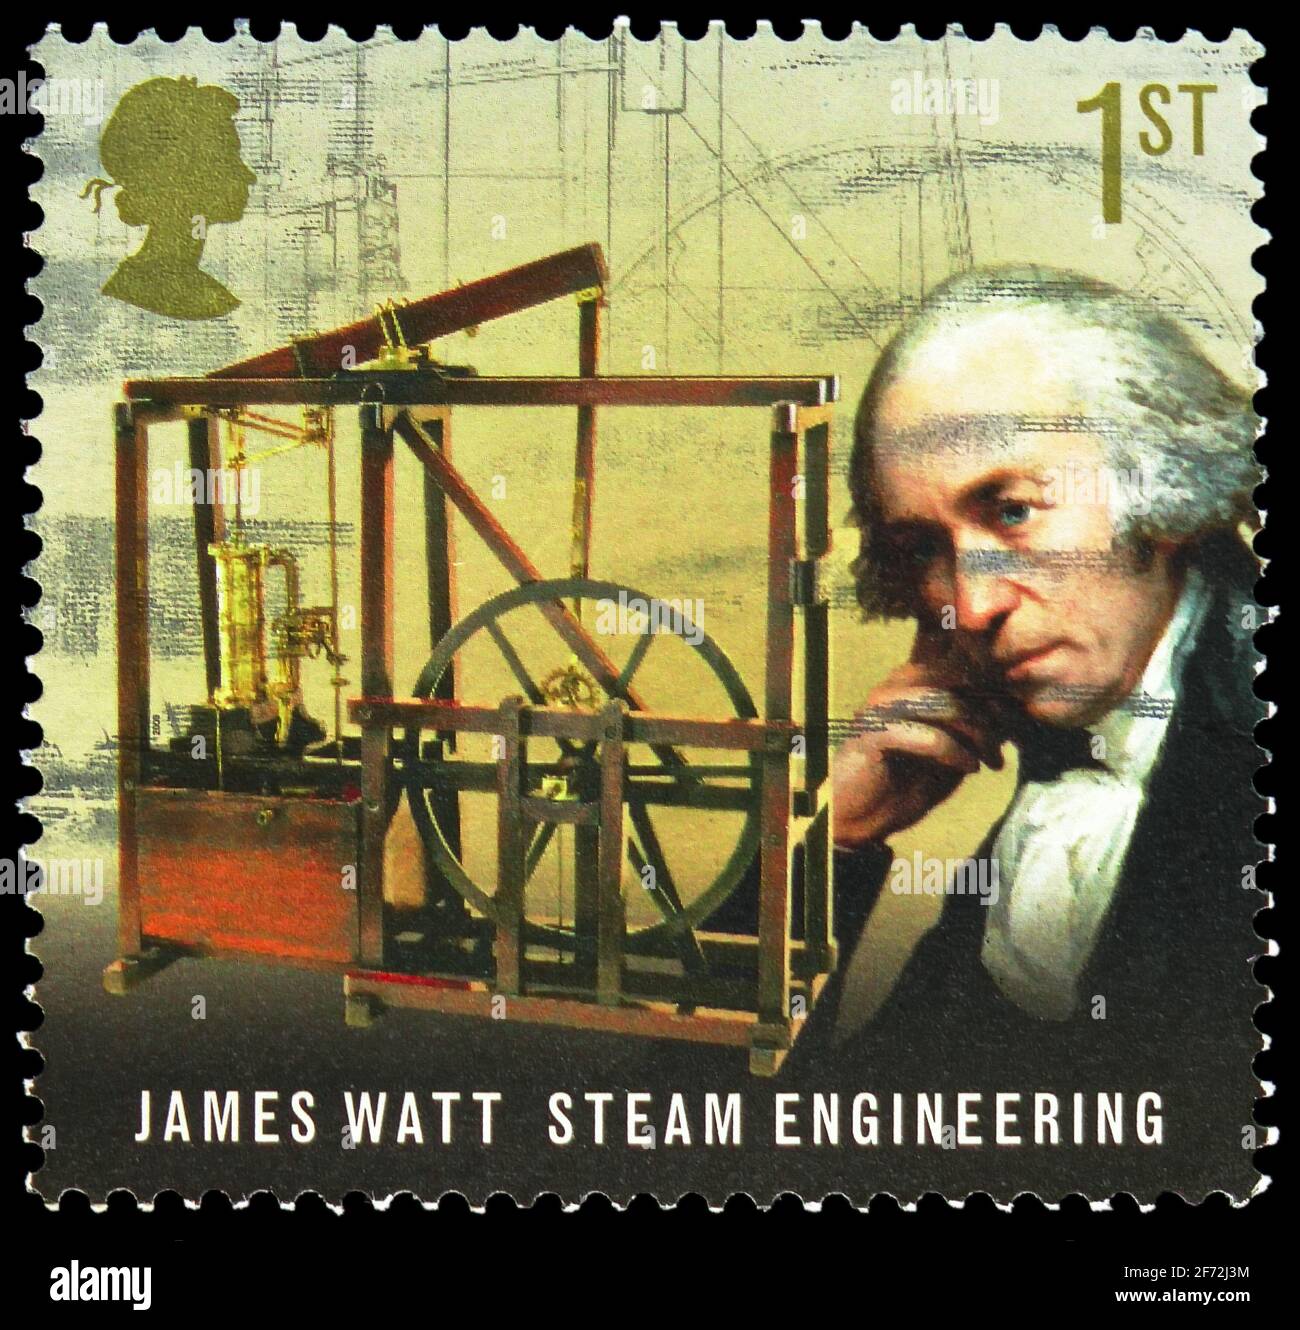 MOSCOU, RUSSIE - 22 DÉCEMBRE 2020: Timbre-poste imprimé au Royaume-Uni montre James Watt, ingénierie à la vapeur, pionniers de la révolution industrielle Banque D'Images